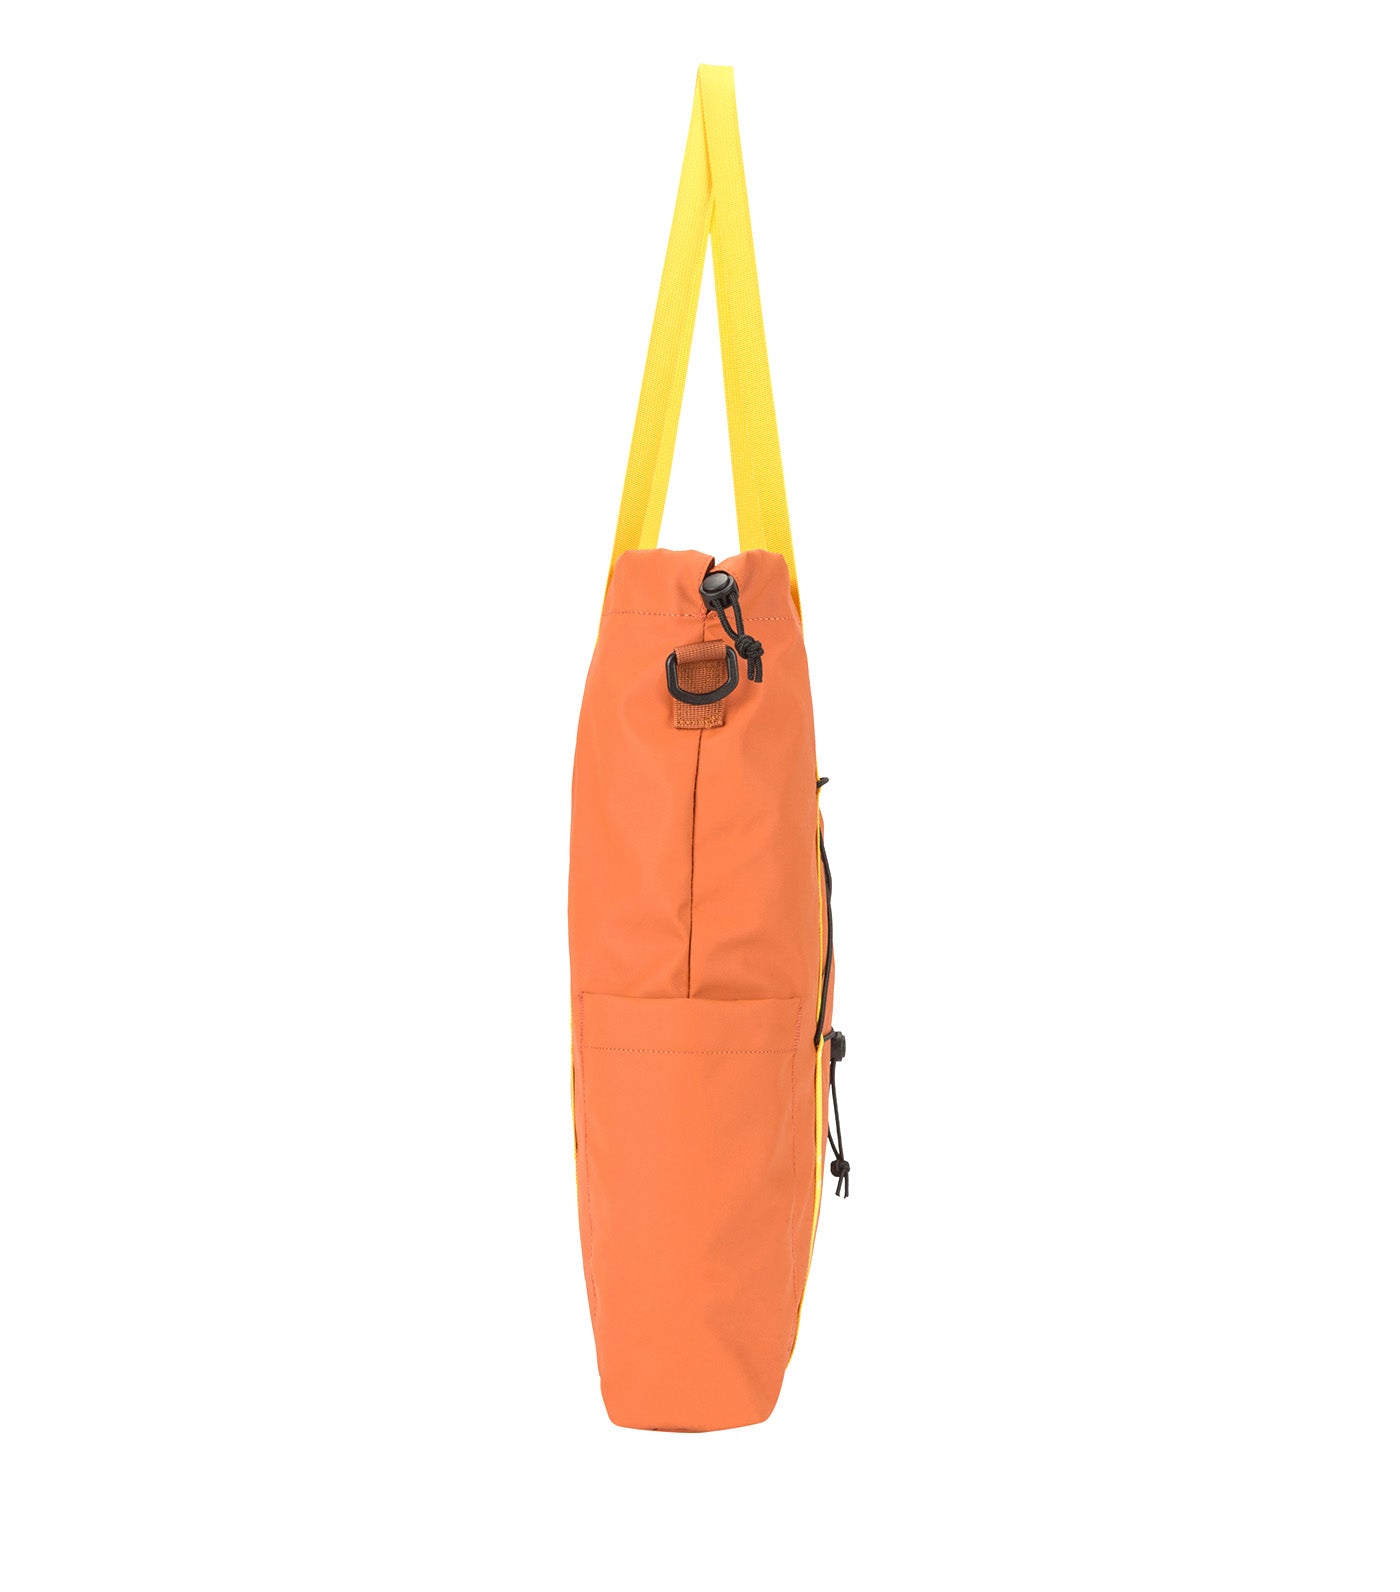 Carston Tote Bag 13L Orange